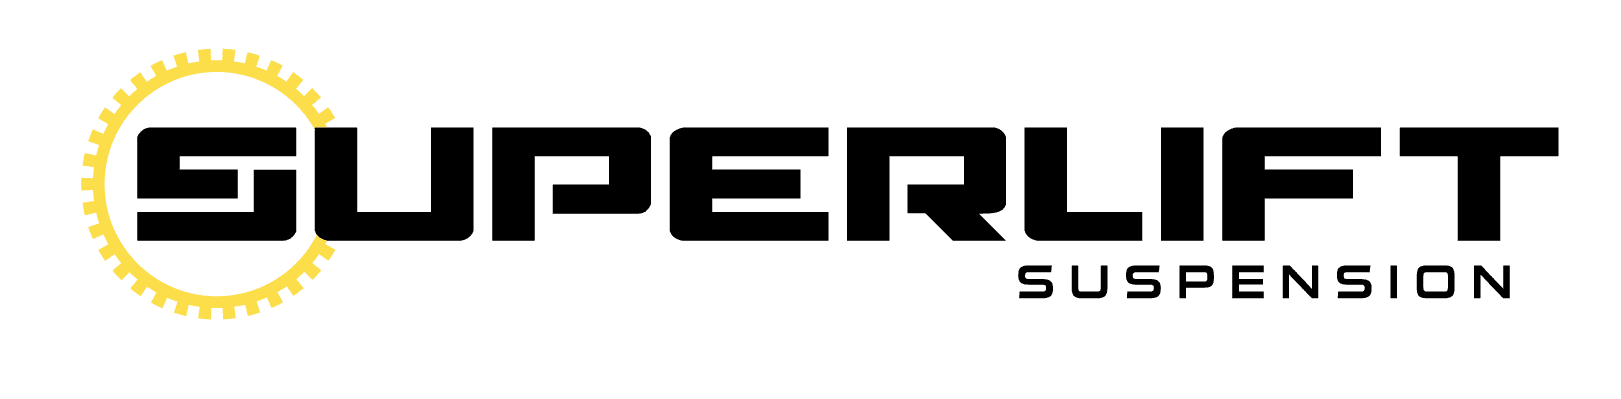 SuperLift_logo_dark